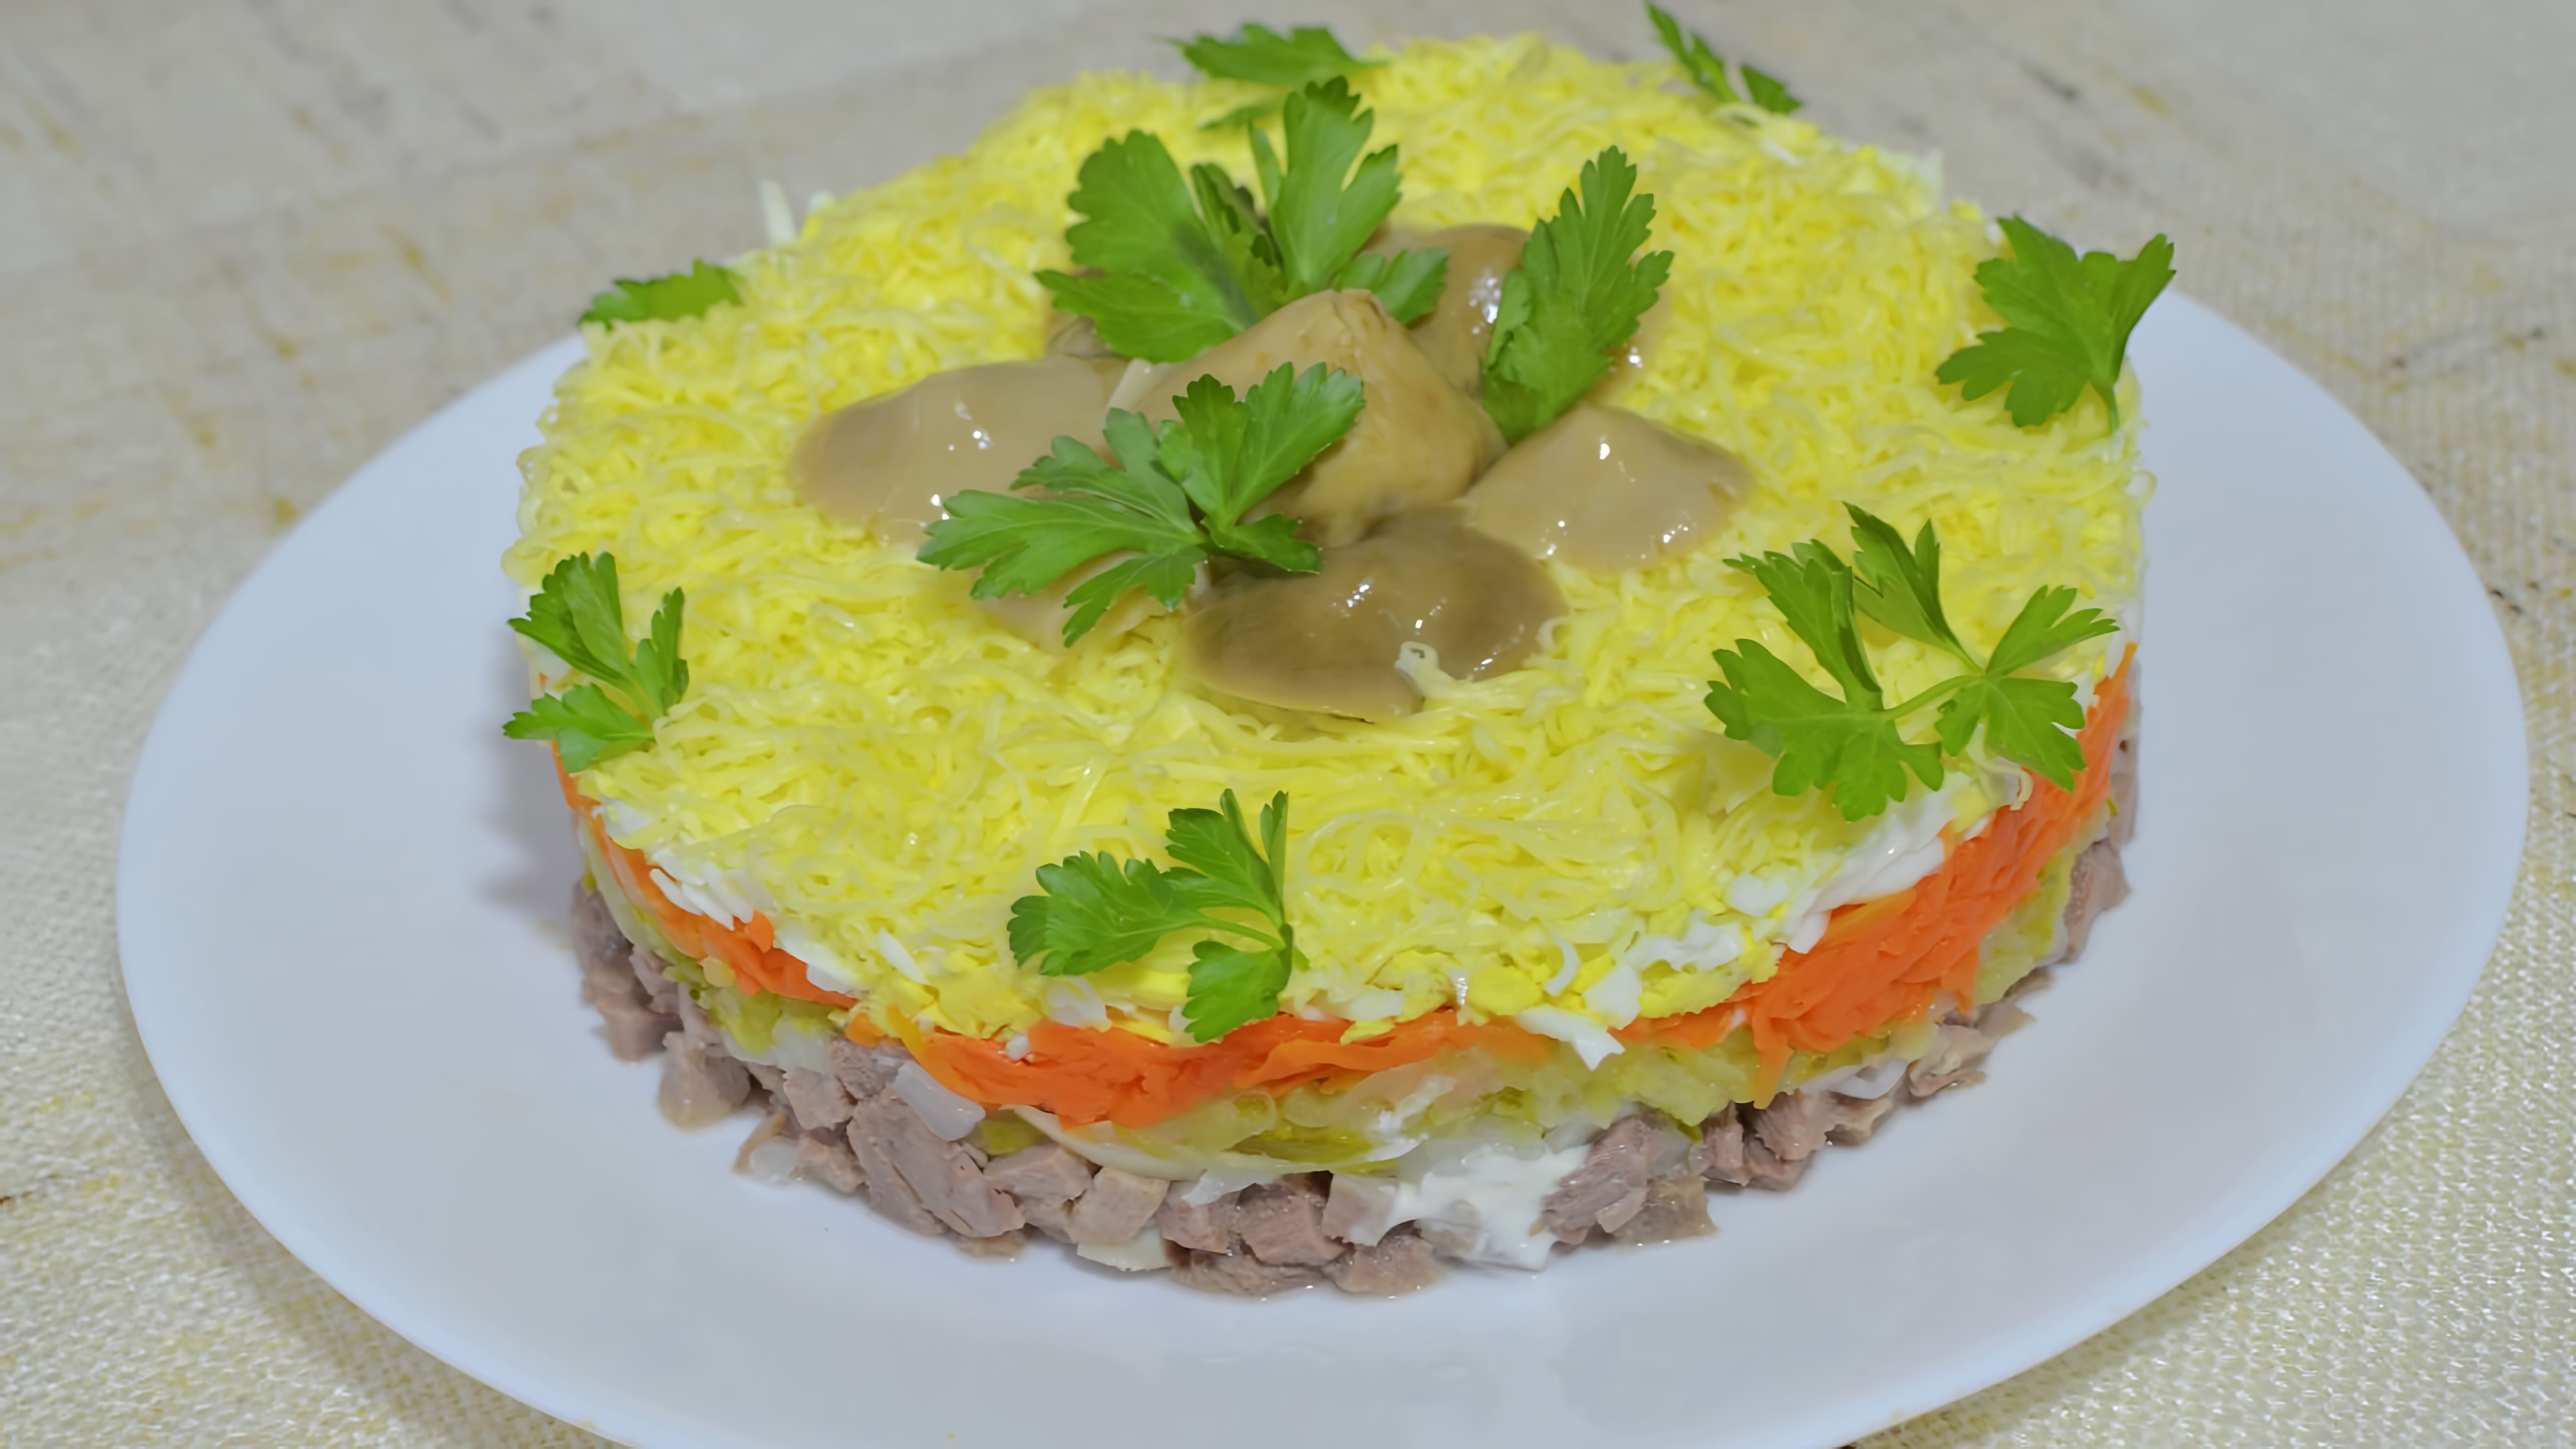 В этом видео демонстрируется рецепт приготовления вкусного праздничного салата из говяжьего языка